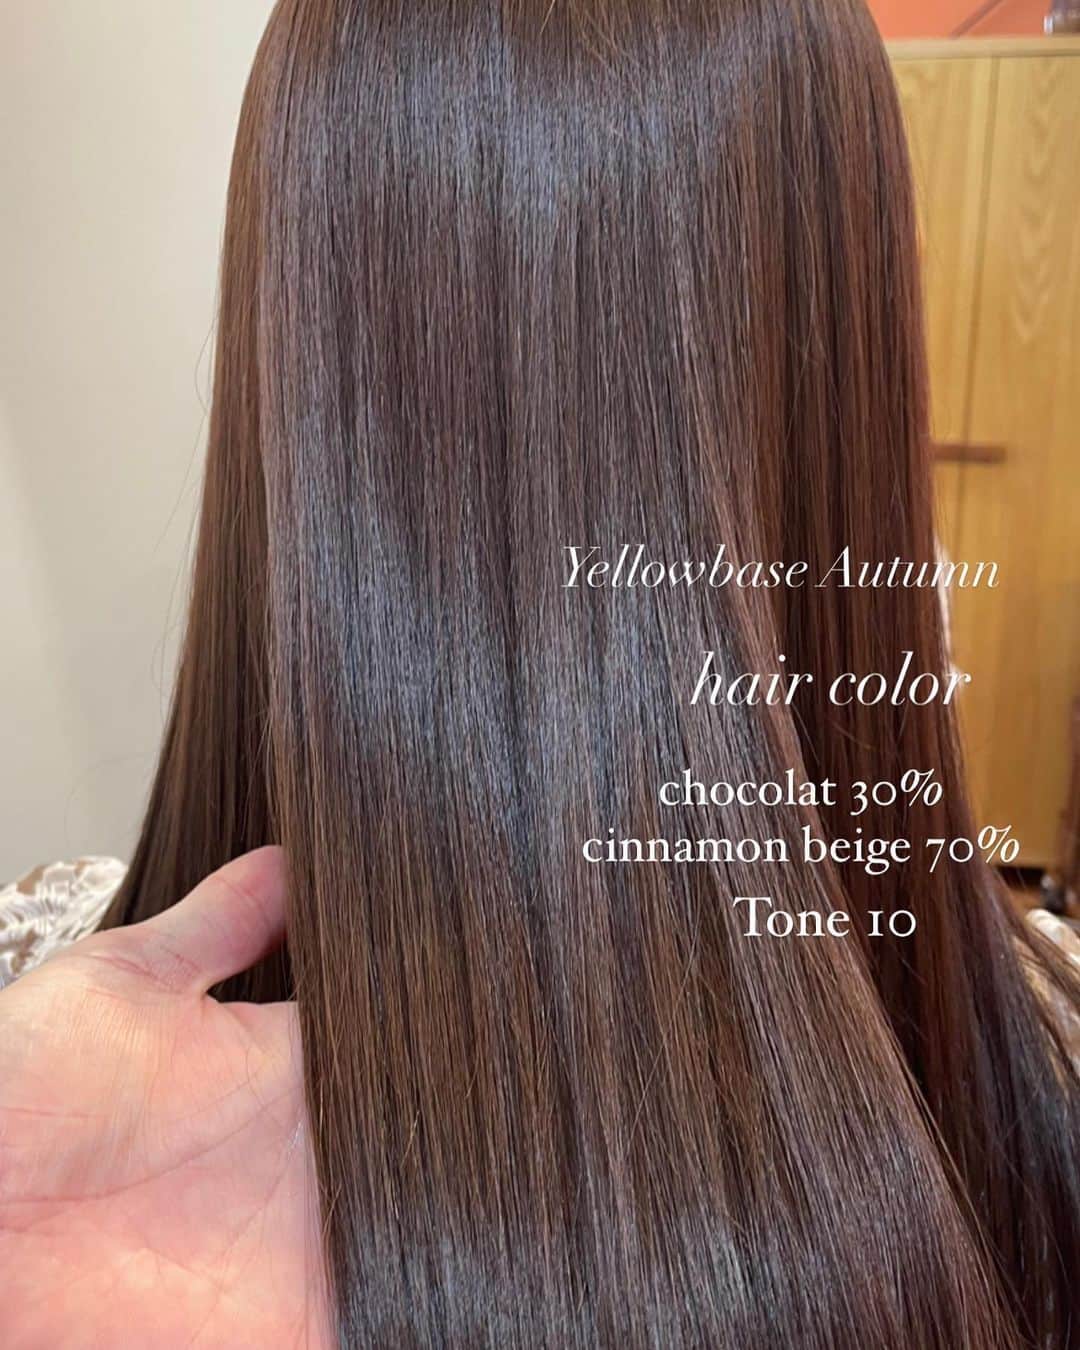 Chihiroのインスタグラム：「Yellowbace Autumn hair color🍁  ■1、2枚目 chocolat 30% cinamon beige 70% Tone： 10  ■3、4枚目 chocolat 70% gray beige 25% clear 5% Tone： 10.5 (仕上がりはTone10くらいの見え方)  stylist： @whyte_keiichi  hair salone： @whyte.hair  【解説】 1、2枚目のほうが暖色強め。 艶は出やすいが、色落ちした時に黄みがでやすいので明るく見える。  3、4枚目は艶というよりは柔らかさが出るカラー。 暖色よりは少し暗く見えやすい。  どちらもイエベ秋カラーで失敗しにくいです♡ 是非ご参考にしてみてください！  ------------------------------------ 【イメージコンサルティングサロン　Ciccy】  パーソナルカラー診断が気になる方はこちら ▶︎ @ciccy_shibaura   ♦︎時間 9:30〜17:30 (時間調整可能)  ♦︎場所 東京都港区芝浦  ♦︎定休日 なし  ♦︎メニュー ✈︎Economy class✈︎ パーソナルカラー診断＋骨格診断 Ciccy診断士枠: ¥22,500- 代表栂野枠：¥32,000- ※ペア診断可能  ✈︎Business class✈︎ パーソナルカラー診断＋骨格診断＋メイクレッスン 代表栂野枠：¥48,500- ※ペア診断可能  ✈︎First class✈︎ 3〜4日かけて行うトータルプロデュース。メニューはカスタマイズ可能。 代表栂野枠：99,500-  詳細はInstagramプロフィール下のURLよりご確認ください。 〜〜〜〜〜〜〜〜〜〜〜〜〜〜〜 【イメージコンサルタント養成講座】  GIA芝浦校の養成講座は10月まで満席です。 現在2023年11月スタートより募集を開始いたしました♡ 詳しくはHPをご覧ください。  〜〜〜〜〜〜〜〜〜〜〜〜〜〜〜 #ヘアカラー #イエベ秋ヘアカラー  #イエベ秋 #パーソナルカラー #パーソナルカラー診断 #パーソナルカラー診断東京 #イメージコンサルタント #ヘアカラートレンド」